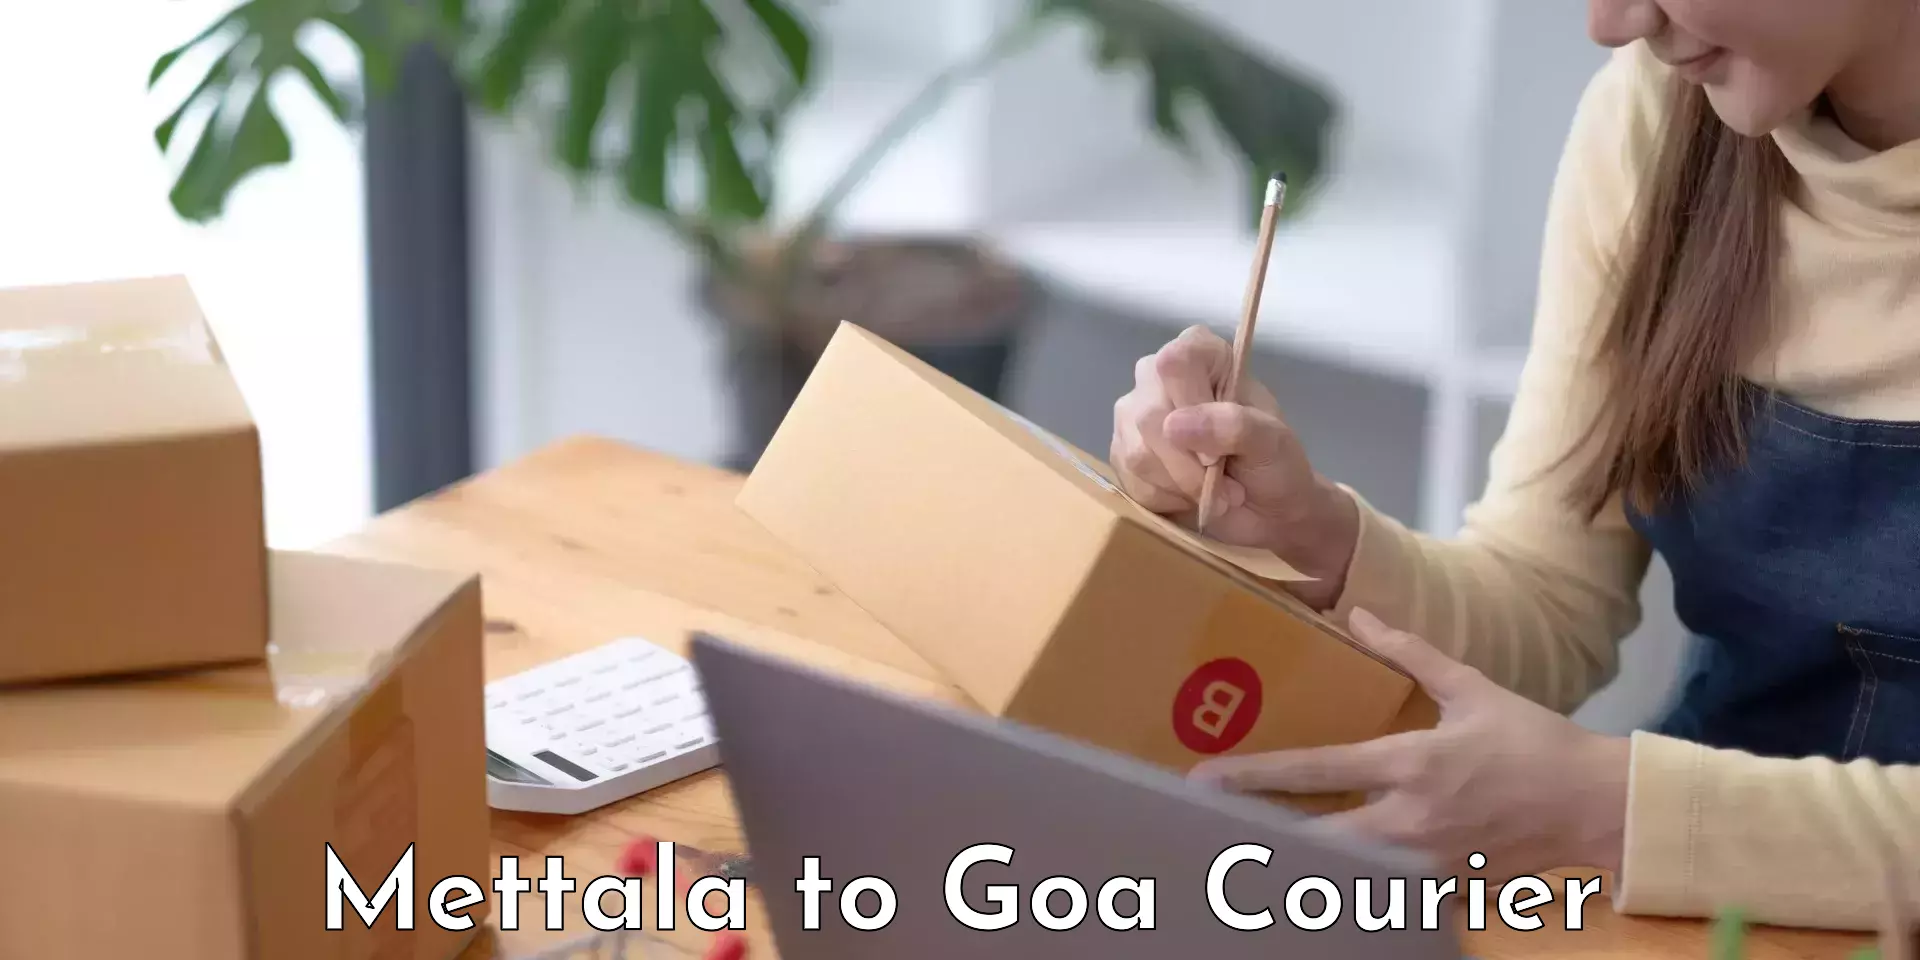 Stress-free household moving Mettala to Goa